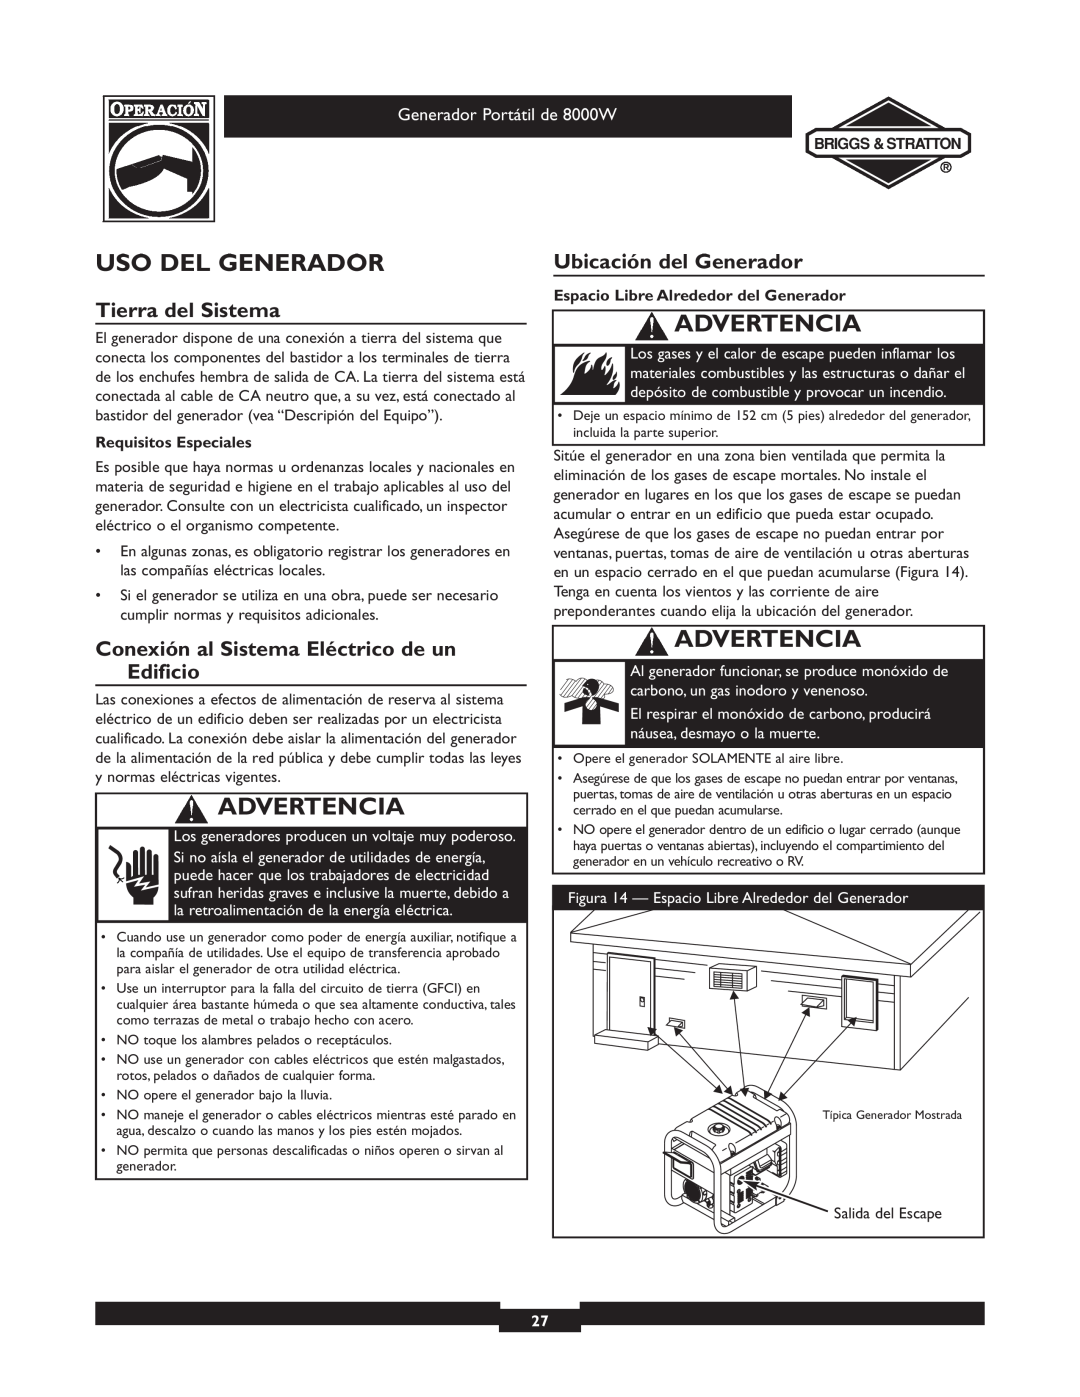 Briggs & Stratton 030210-2 manual Uso Del Generador, Tierra del Sistema, Ubicación del Generador, Advertencia 